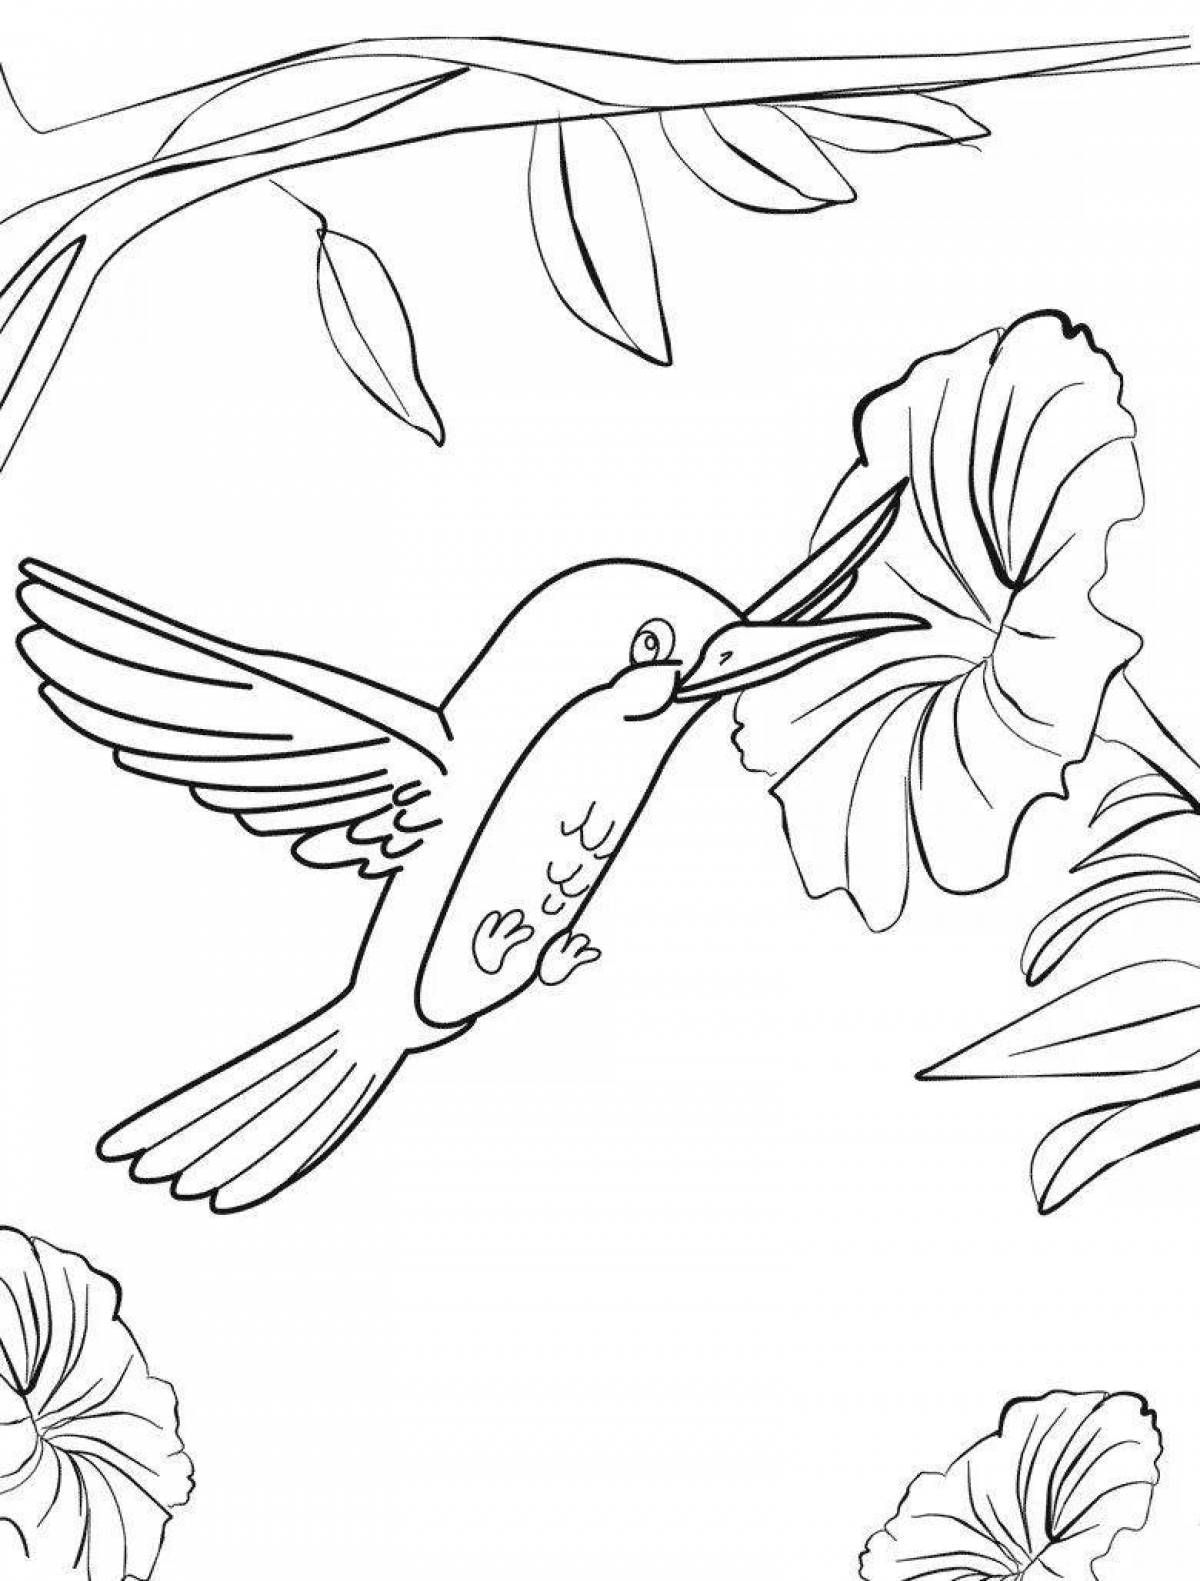 Мистическая раскраска колибри для детей